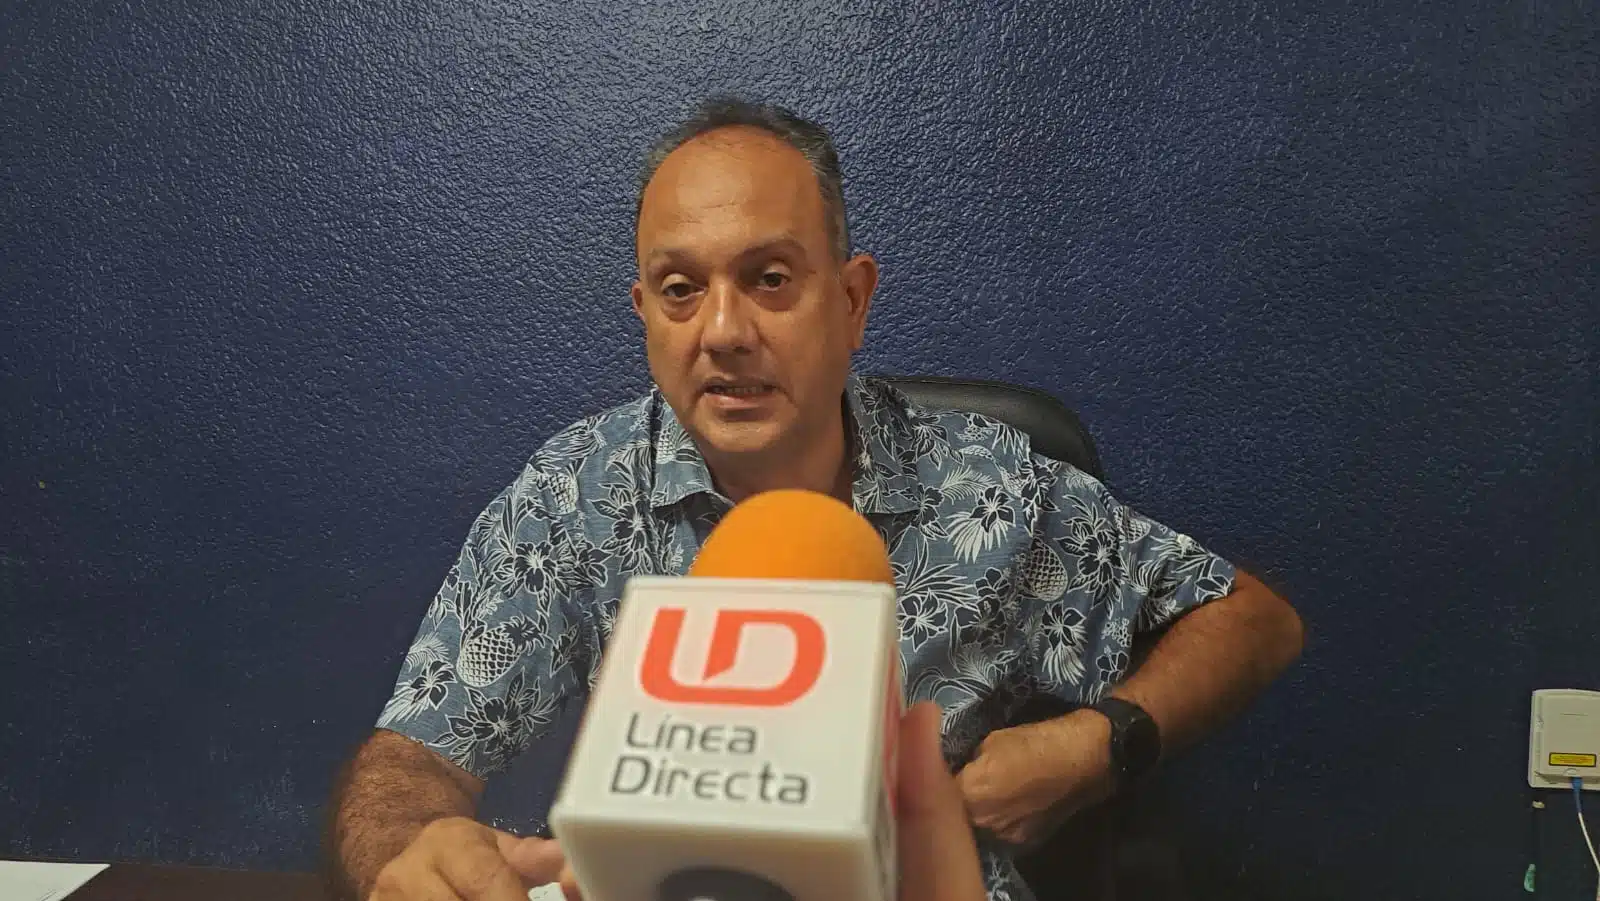 Carlos Alberto Lugo Cervantes, titular de la Dirección del Trabajo y Previsión Social de la Zona Sur de Sinaloa